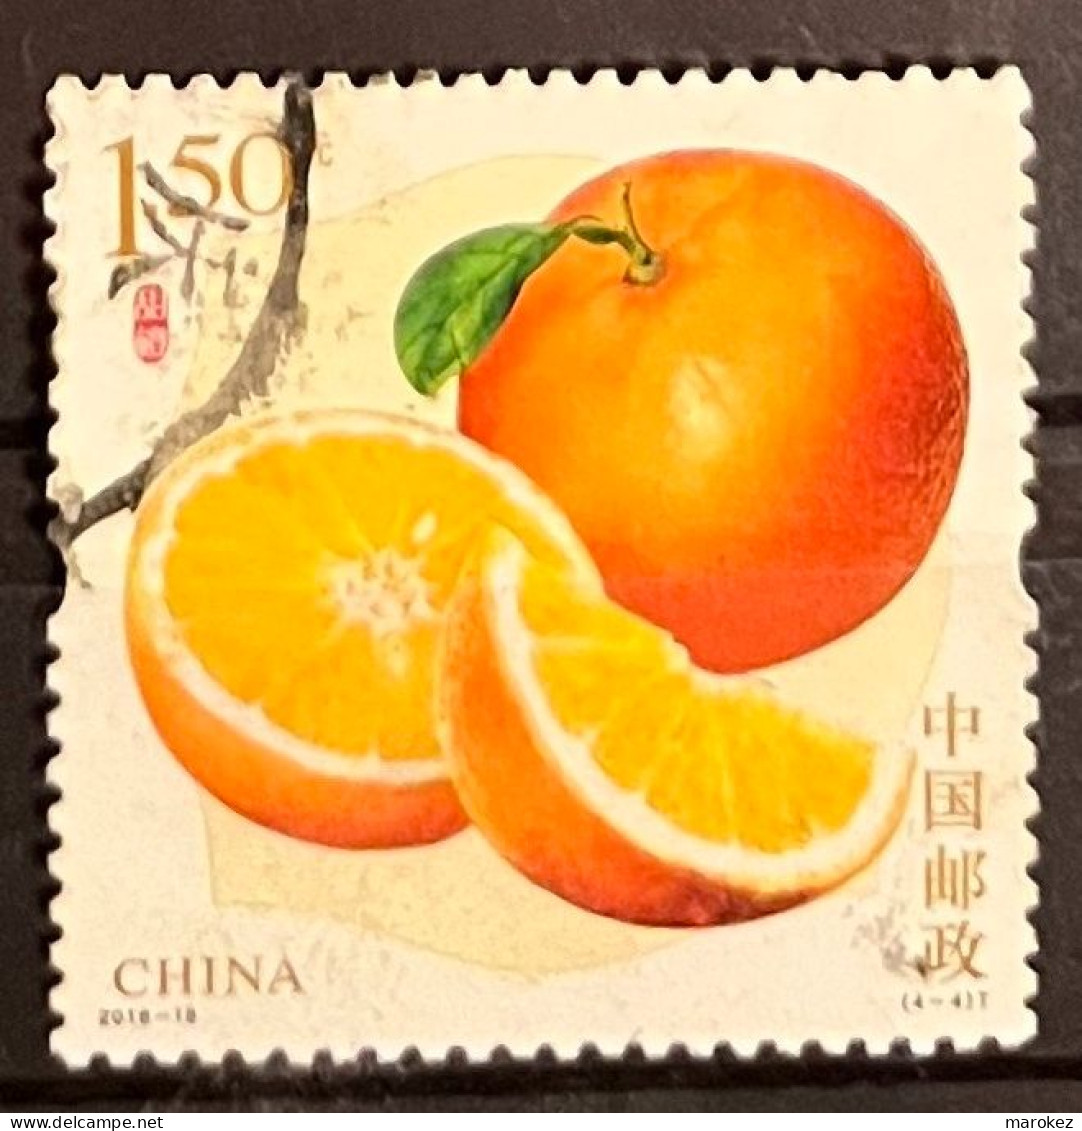 CHINA PRC 2018 Flora - Fruit; Orange Postally Used Stamp MICHEL # 5015 - Usados